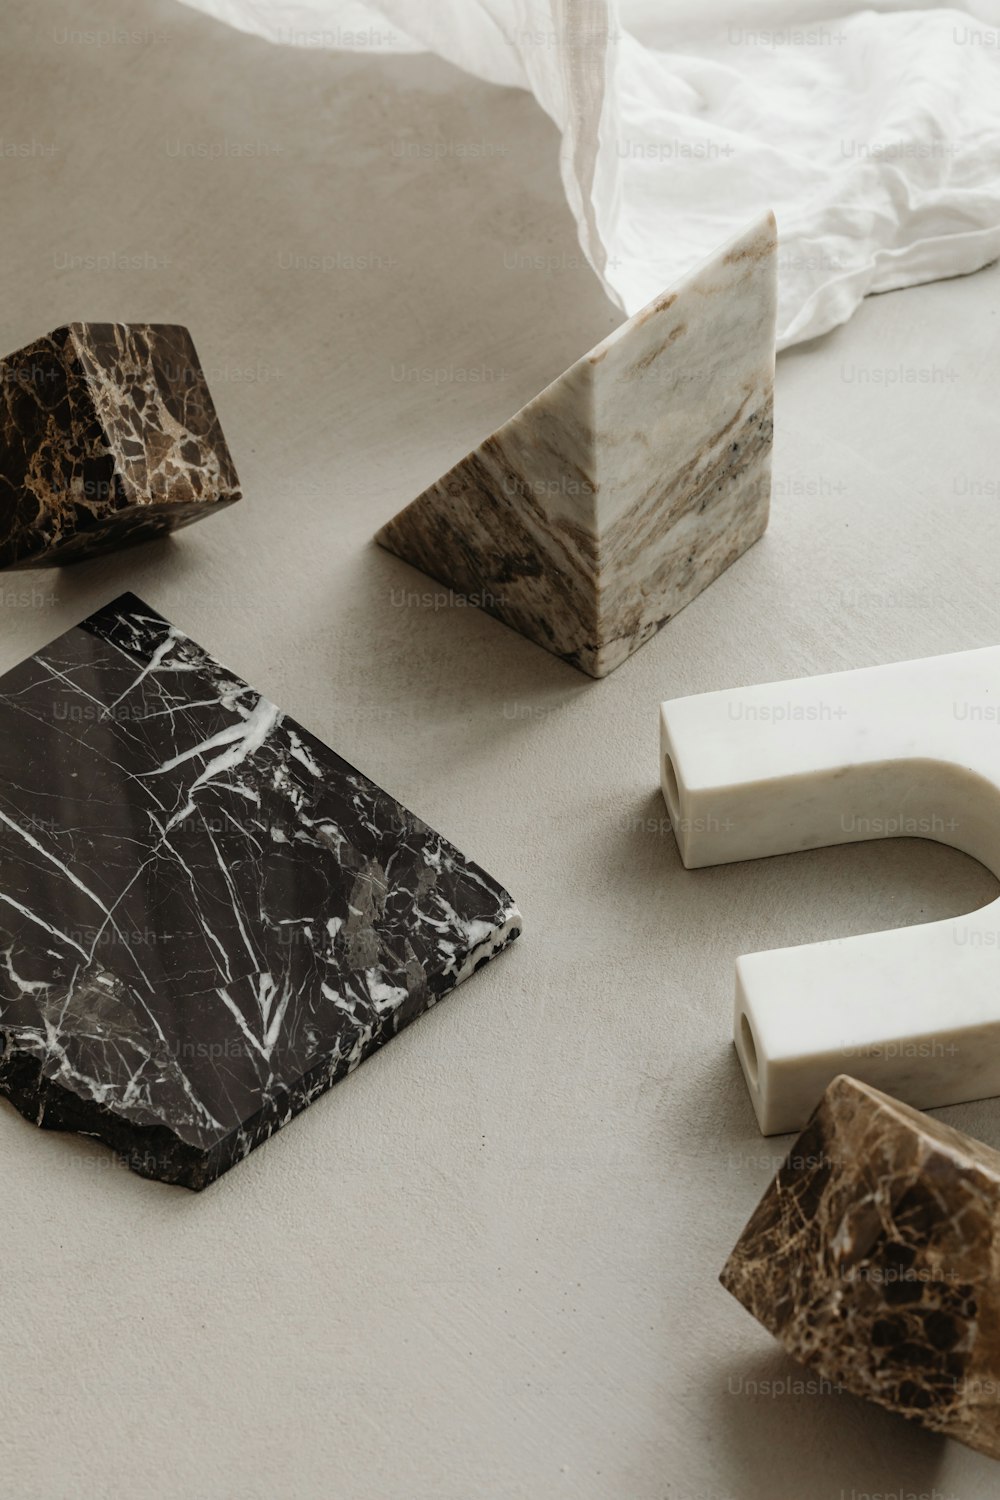 des blocs de marbre et une serviette en papier sur une table